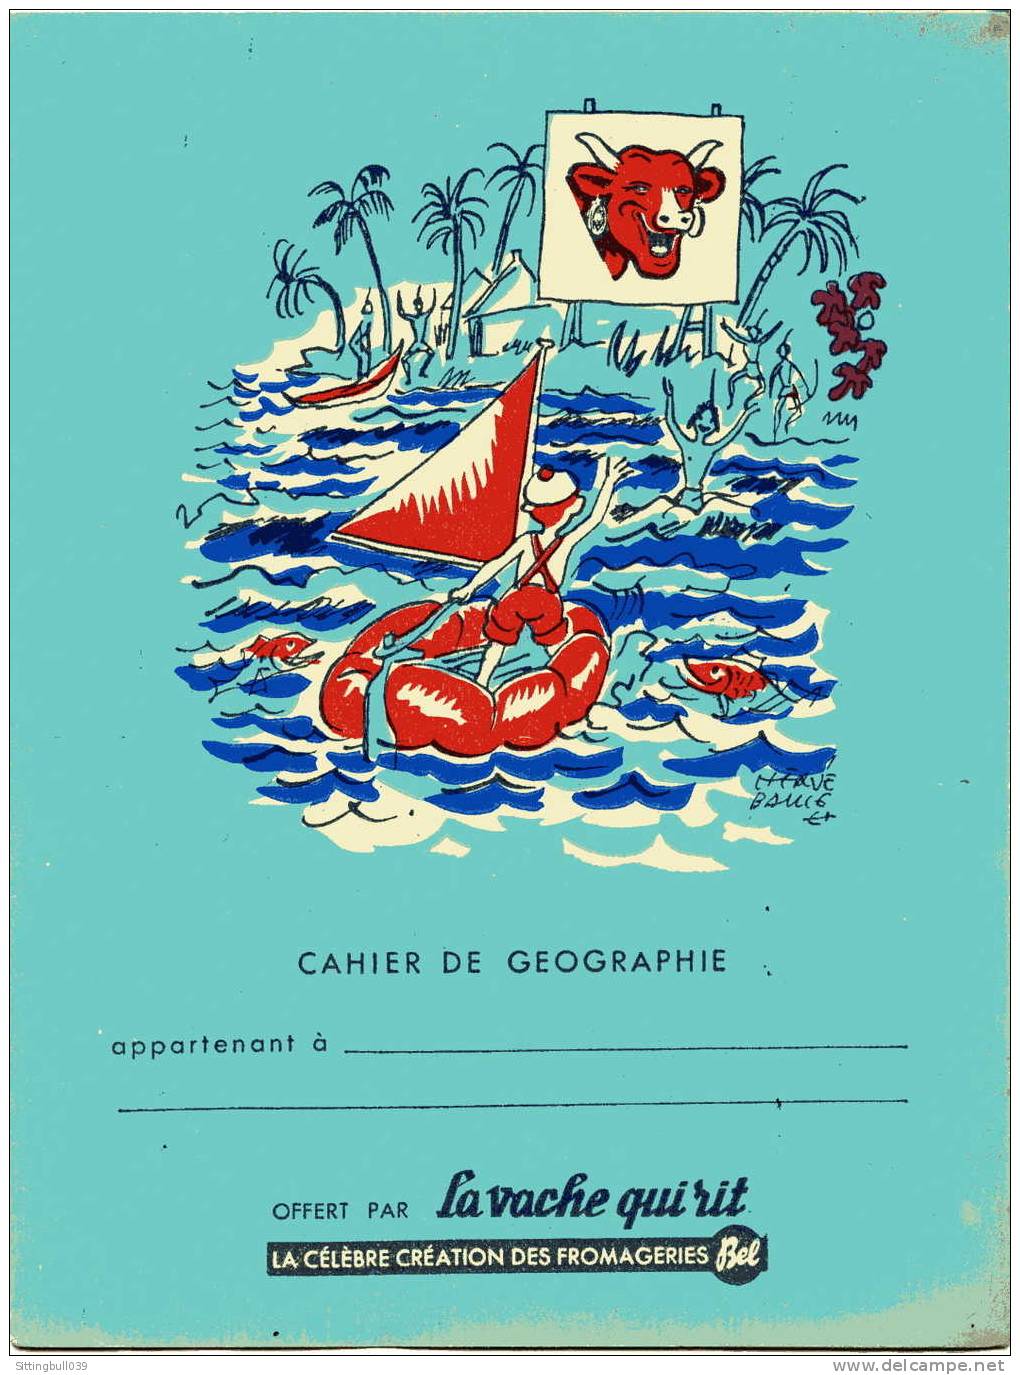 PROTÈGE-CAHIER PUBLICITAIRE ILLUSTRE PAR HERVE BAILLE, OFFERT PAR LA VACHE QUI RIT. VERSO ILLUSTRE. ANNEES 1950,55 - Book Covers